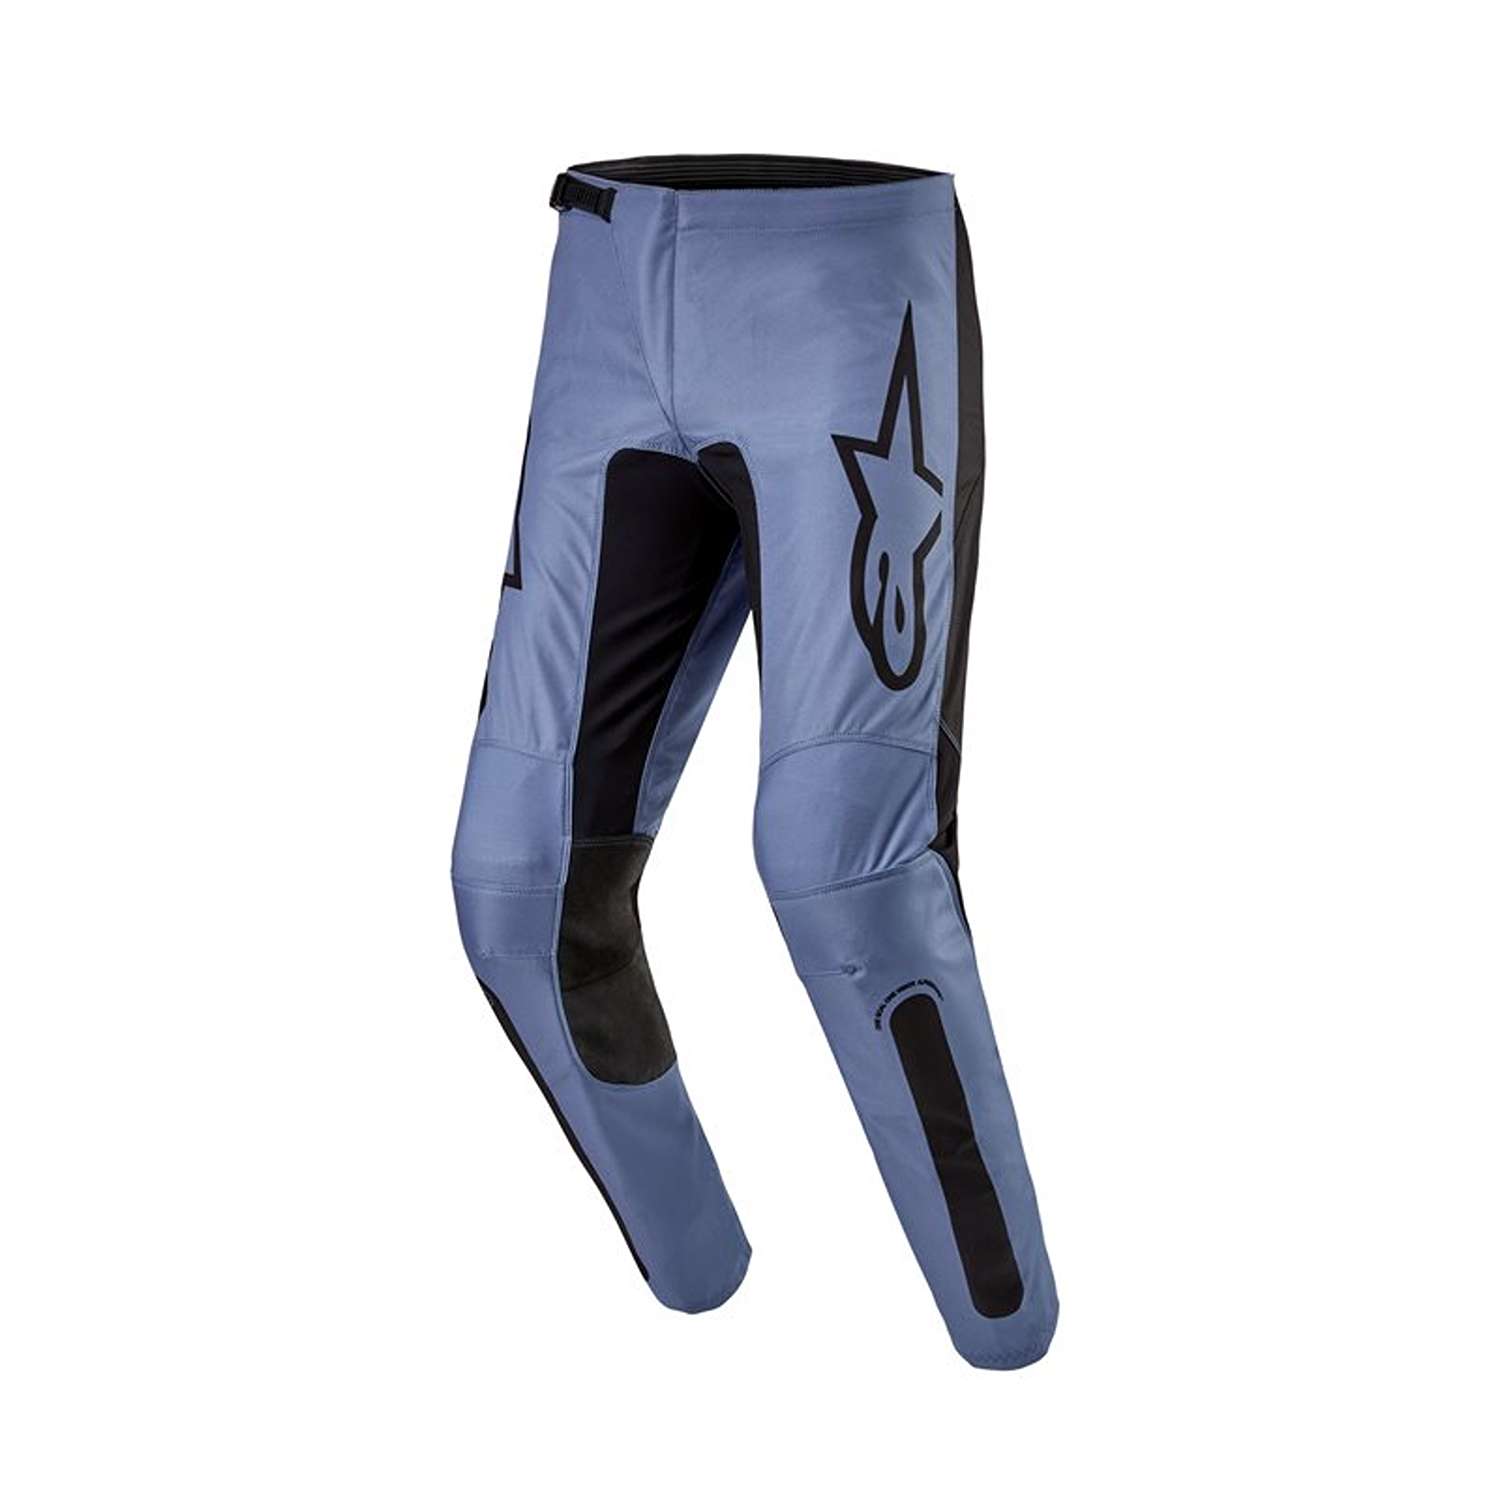 Image of Alpinestars Fluid Lurv Pants Light Blue Black Size 30 ID 8059347265216